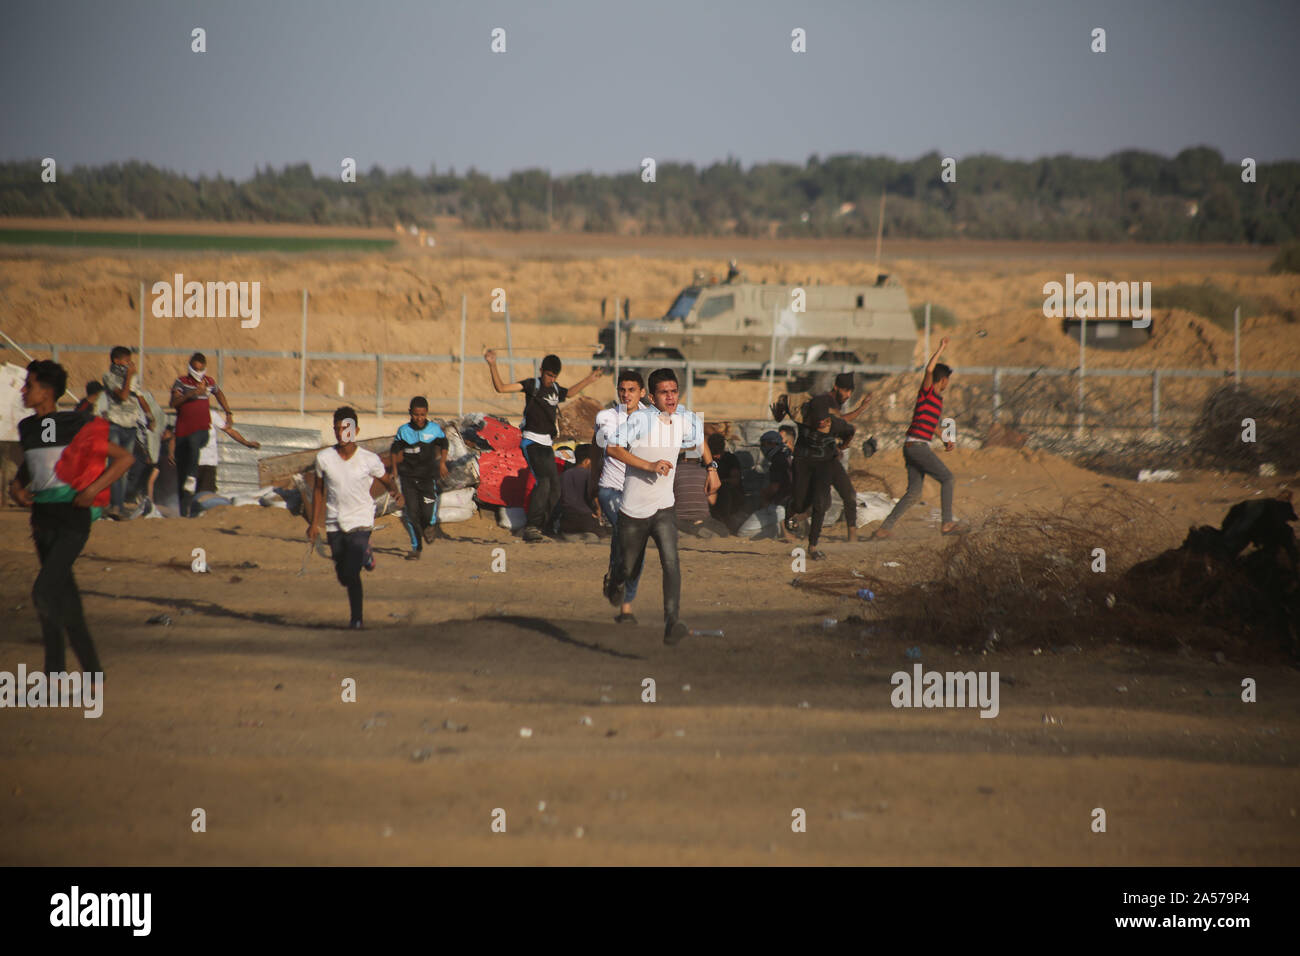 La franja de Gaza. 18 Oct, 2019. Los palestinos ejecutar para tomar la cubierta de botes de gas lacrimógeno disparado por las tropas israelíes durante los enfrentamientos en la frontera Gaza-Israel, al este de la ciudad del sur de la Faja de Gaza, Khan Younis, 18 de octubre de 2019. Al menos 69 palestinos resultaron heridos el viernes por disparos de los soldados israelíes durante los enfrentamientos con decenas de manifestantes palestinos en el este de la Franja de Gaza, cerca de la frontera con Israel, dijeron los médicos. Crédito: Khaled Omar/Xinhua/Alamy Live News Foto de stock